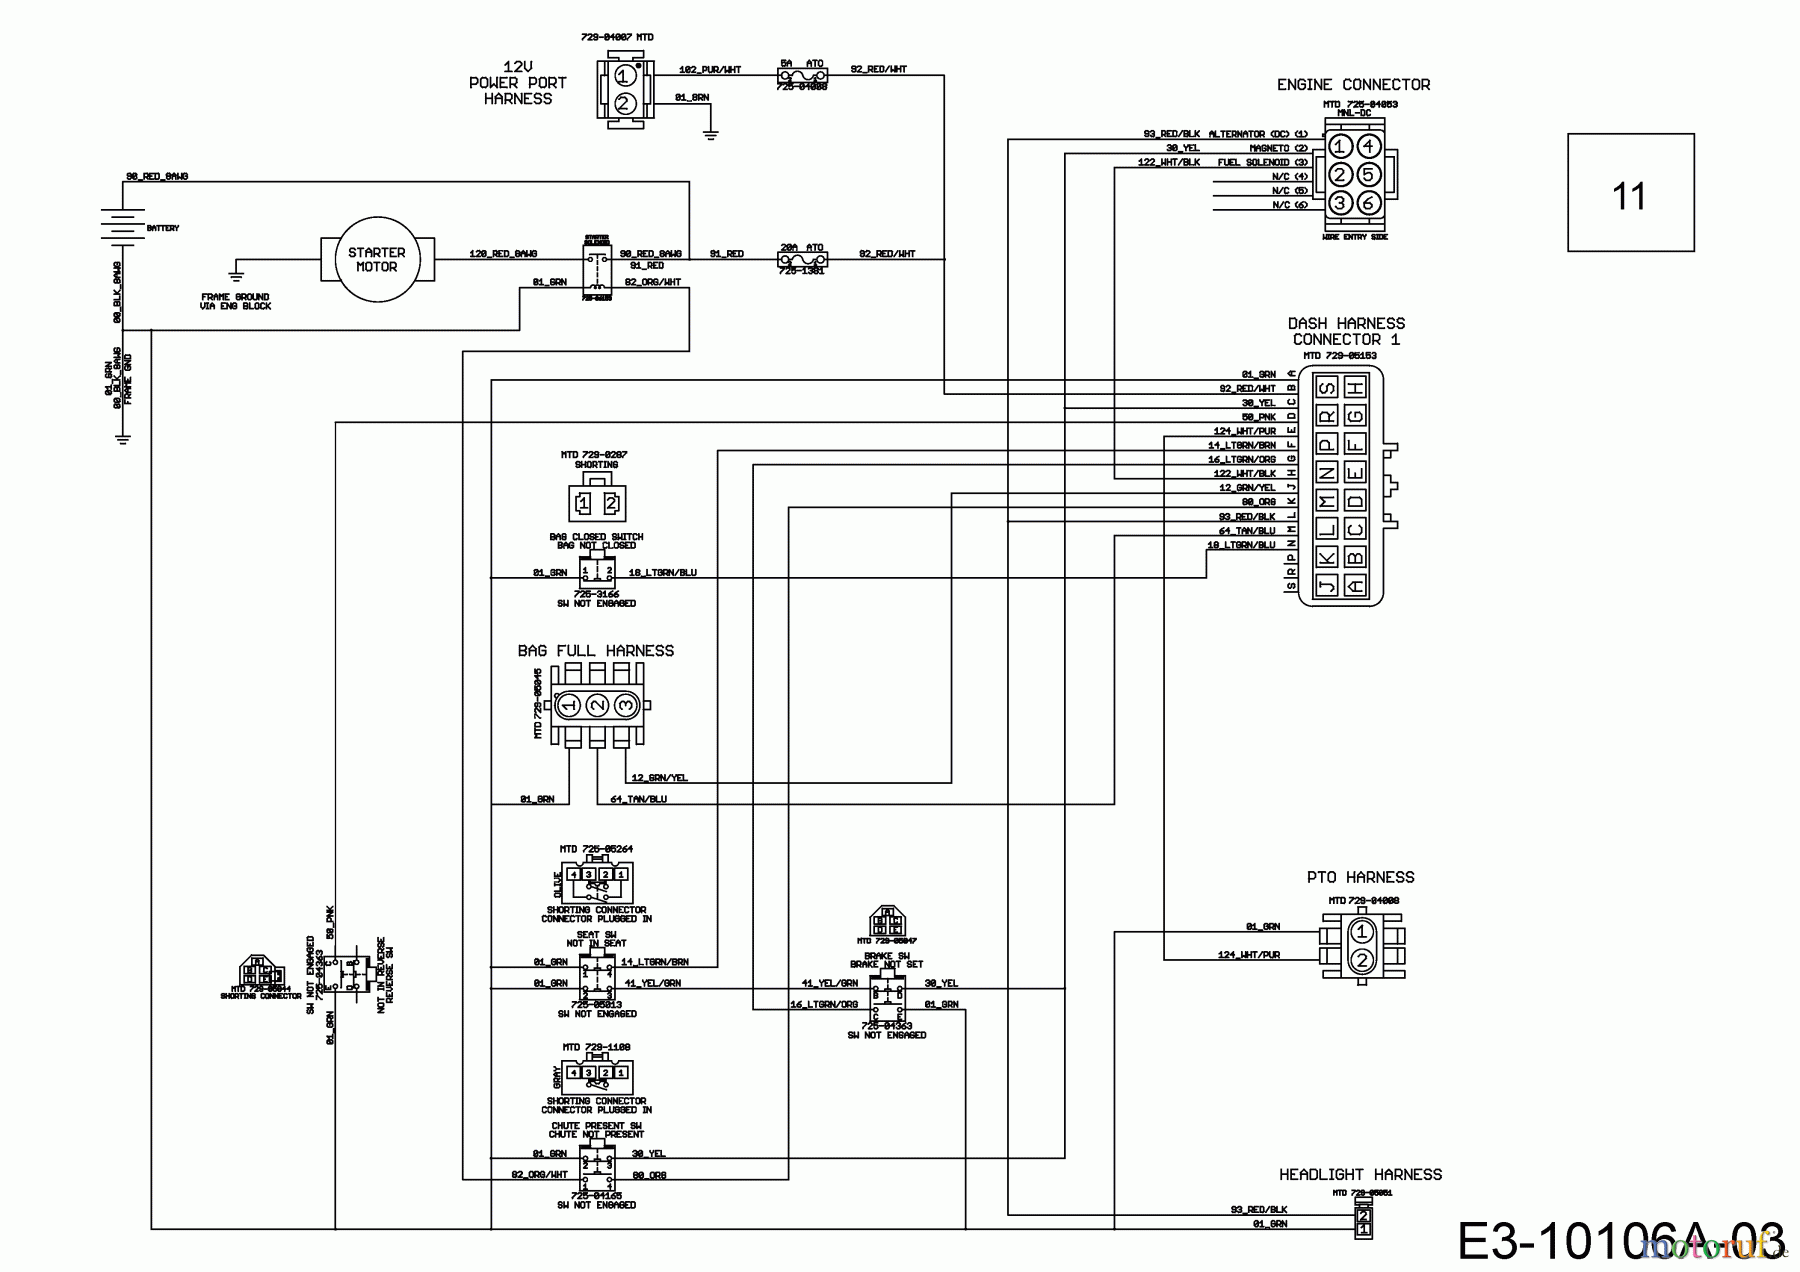  Wolf-Garten Lawn tractors GLTT 180.106 H 13BTA1VR650  (2017) Main wiring diagram